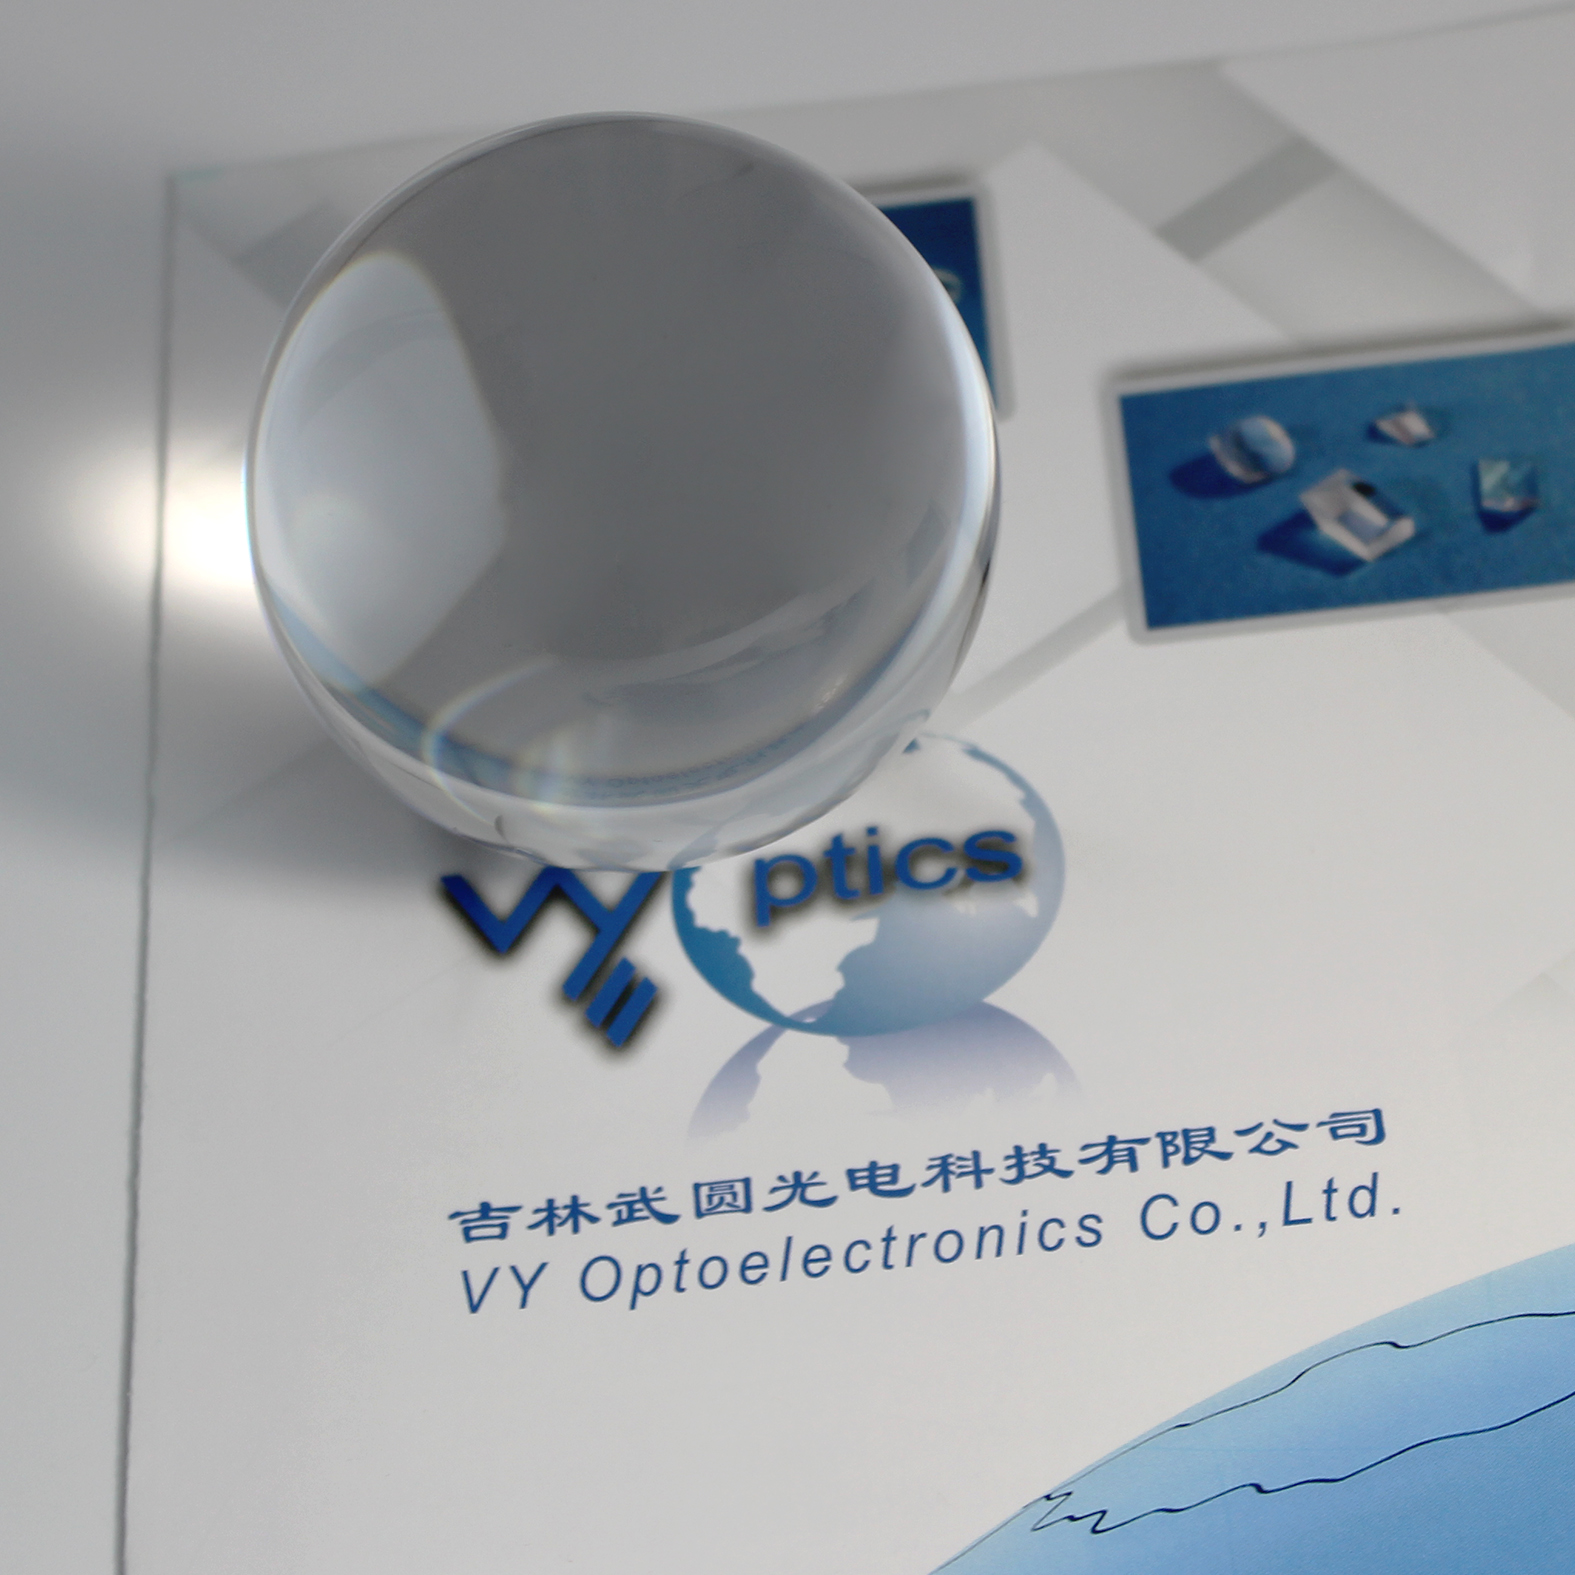 Optical Glass 50mm Custom Ball Lenses K9 JGS1 Sapphire H-Zlaf92 for Fiber